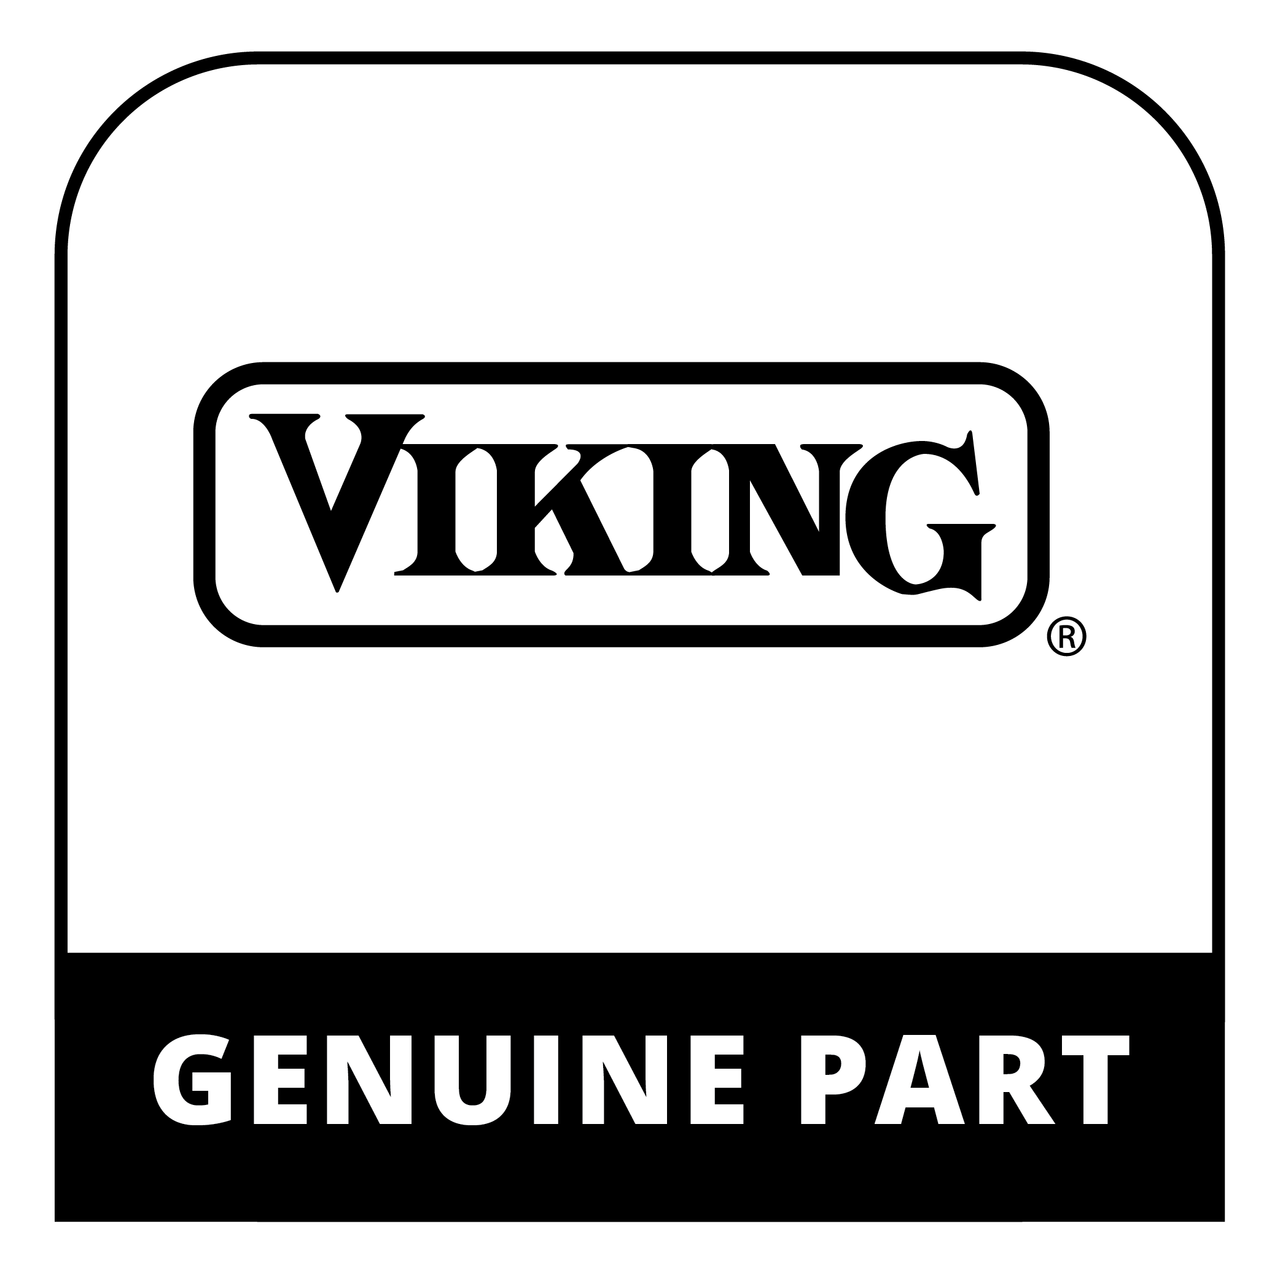 Viking C90013824AR - CENTER TRIM 48" *AR* - Genuine Viking Part